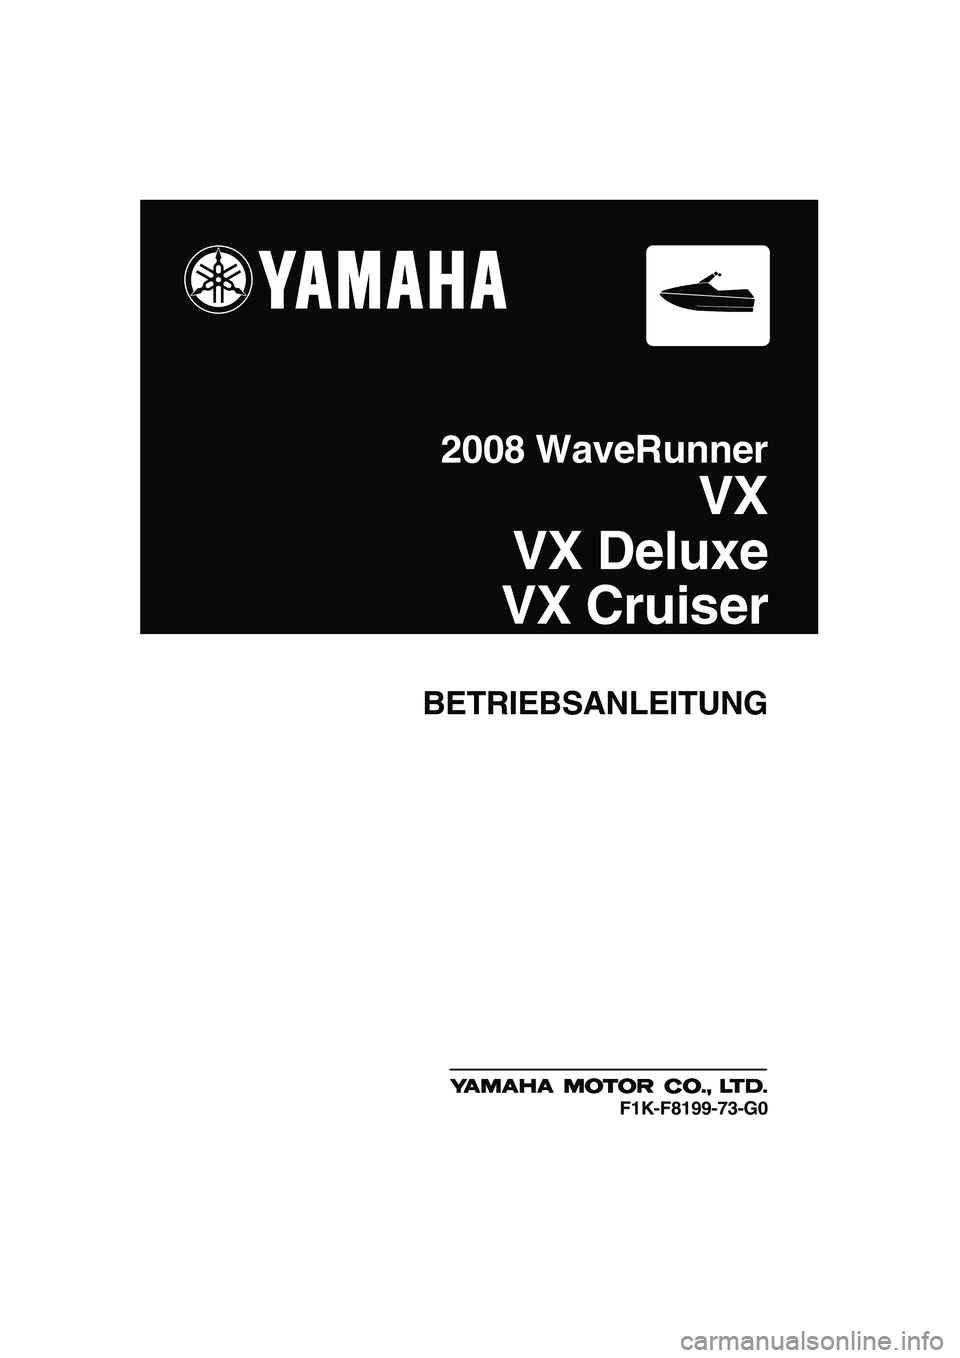 YAMAHA VX SPORT 2008  Betriebsanleitungen (in German) BETRIEBSANLEITUNG
2008 WaveRunner
VX
VX Deluxe
VX Cruiser
F1K-F8199-73-G0
UF1K73G0.book  Page 1  Tuesday, July 10, 2007  9:21 PM 